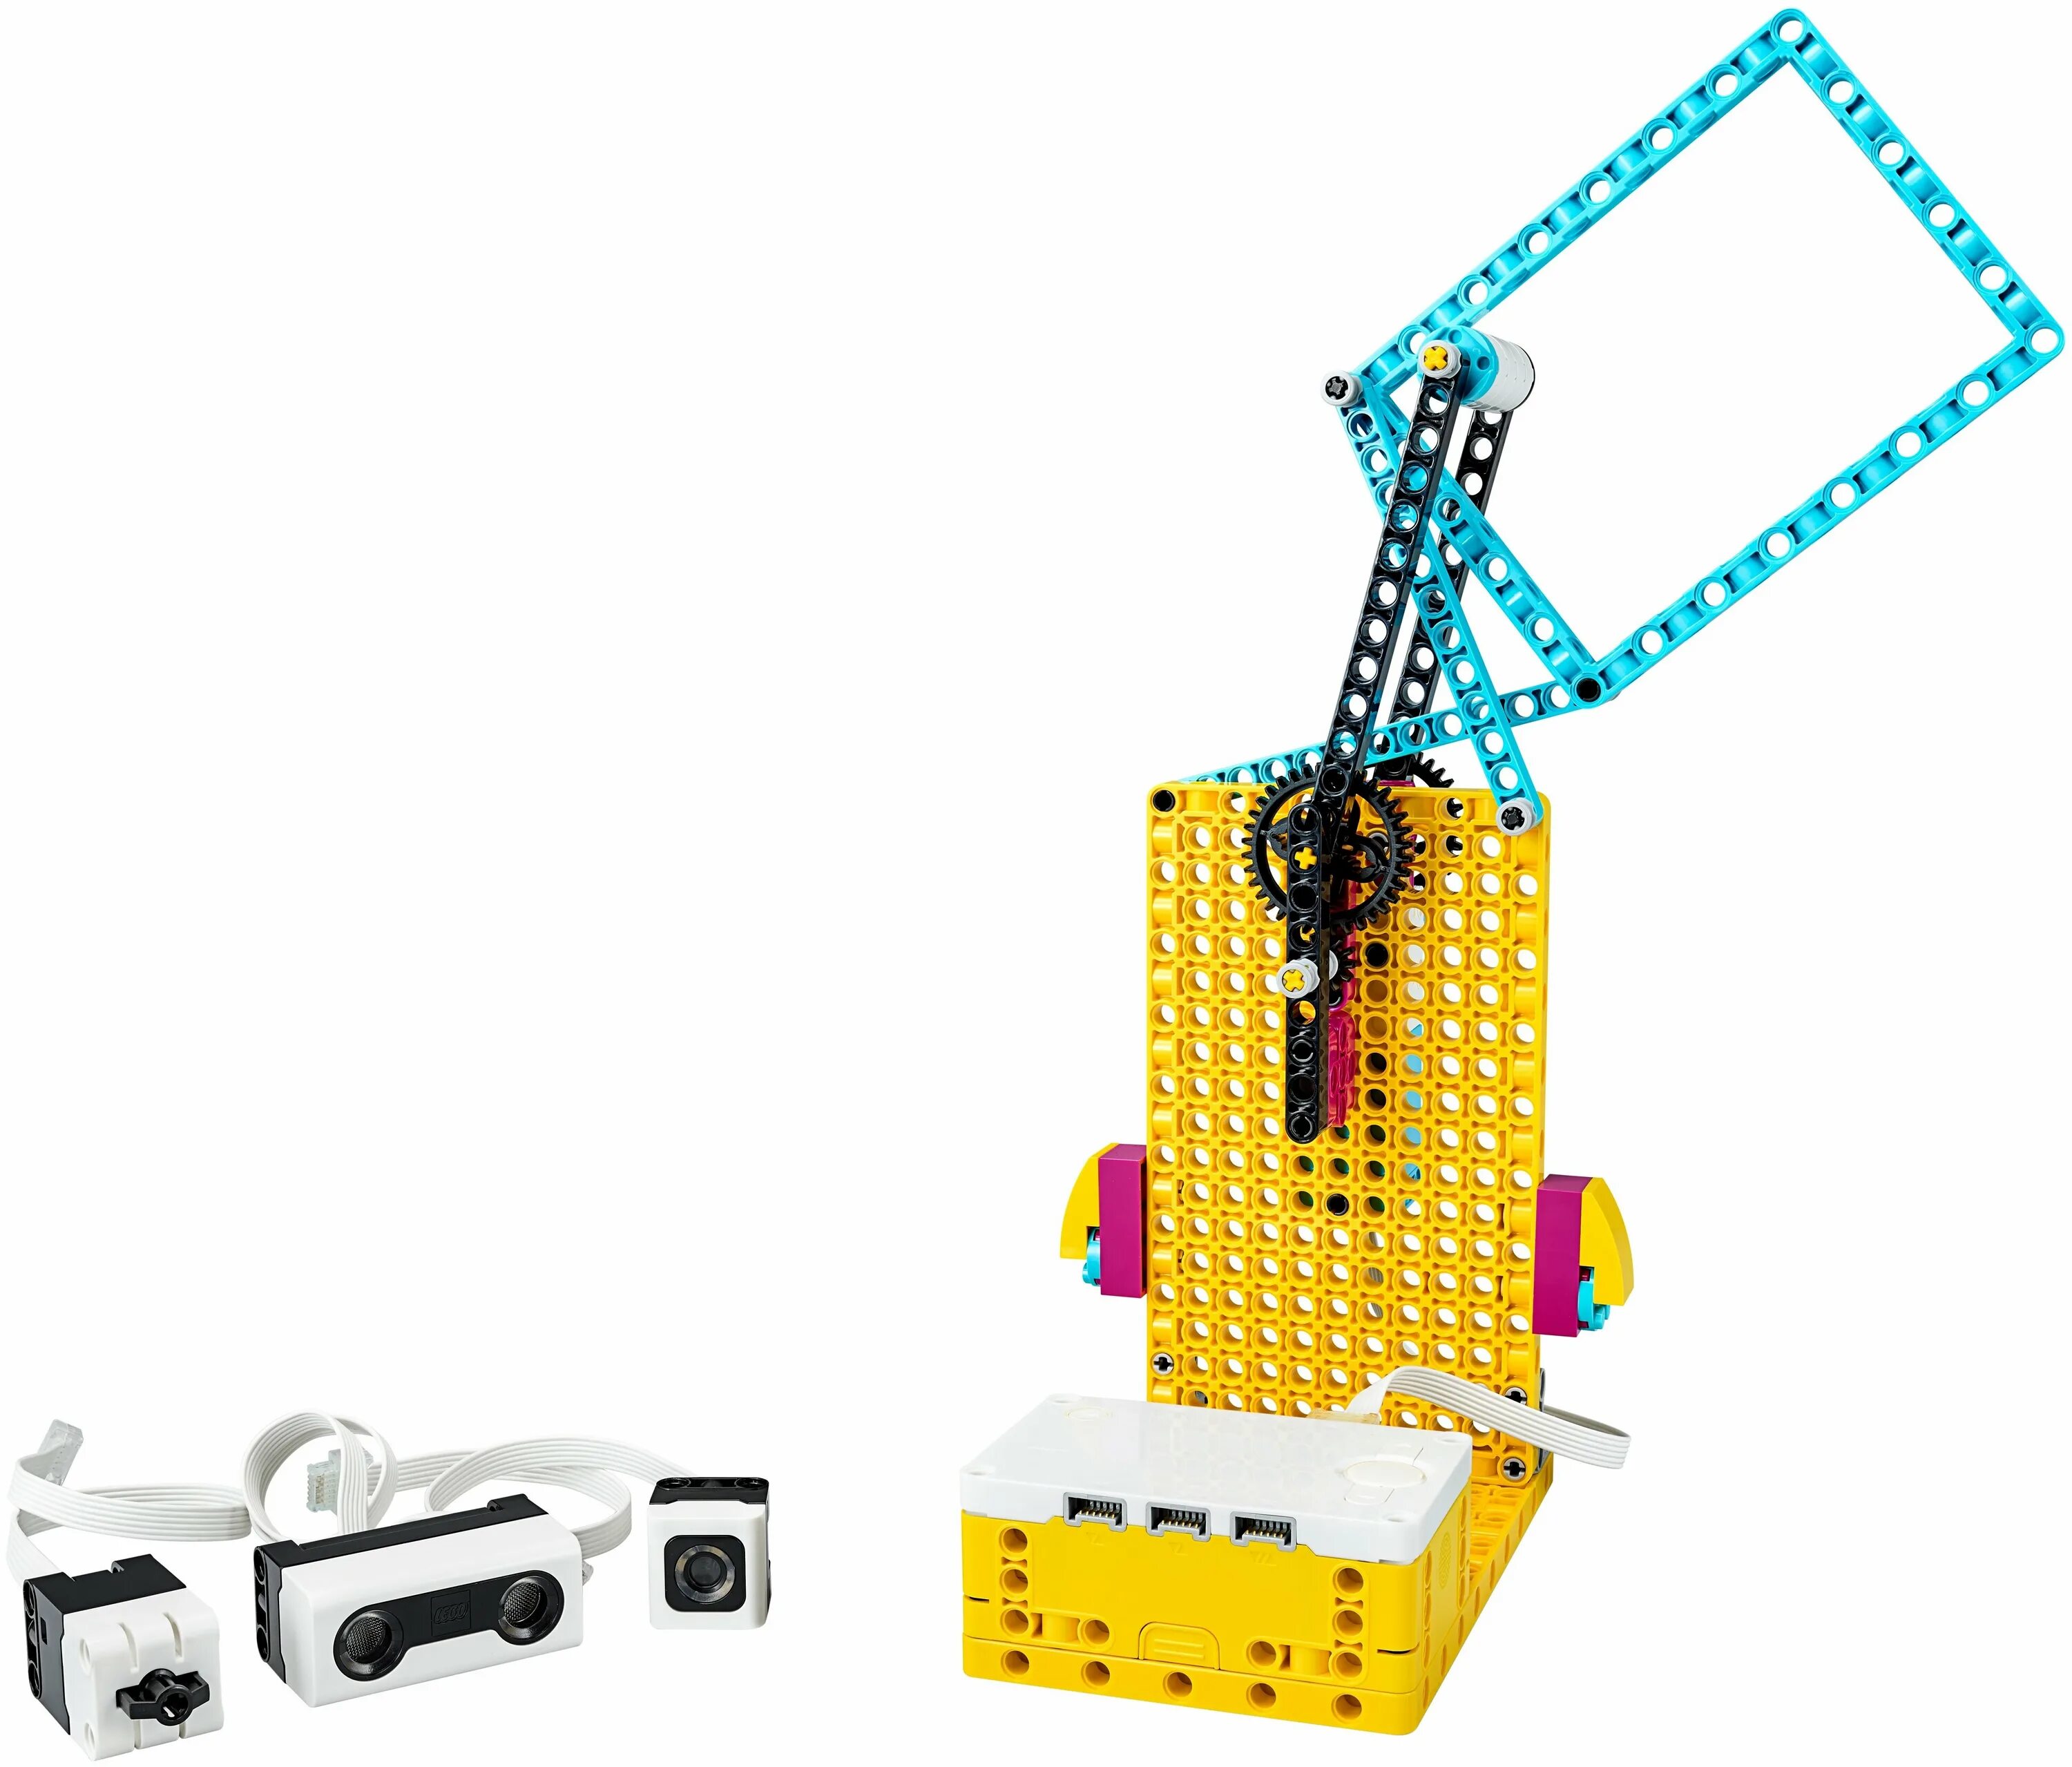 Спайк прайм. Лего Эдьюкейшн Спайк Прайм. LEGO Spike Prime 45678. 45678 Базовый набор LEGO® Education Spike™ Prime. LEGO 45678 базовый набор Spike Prime.